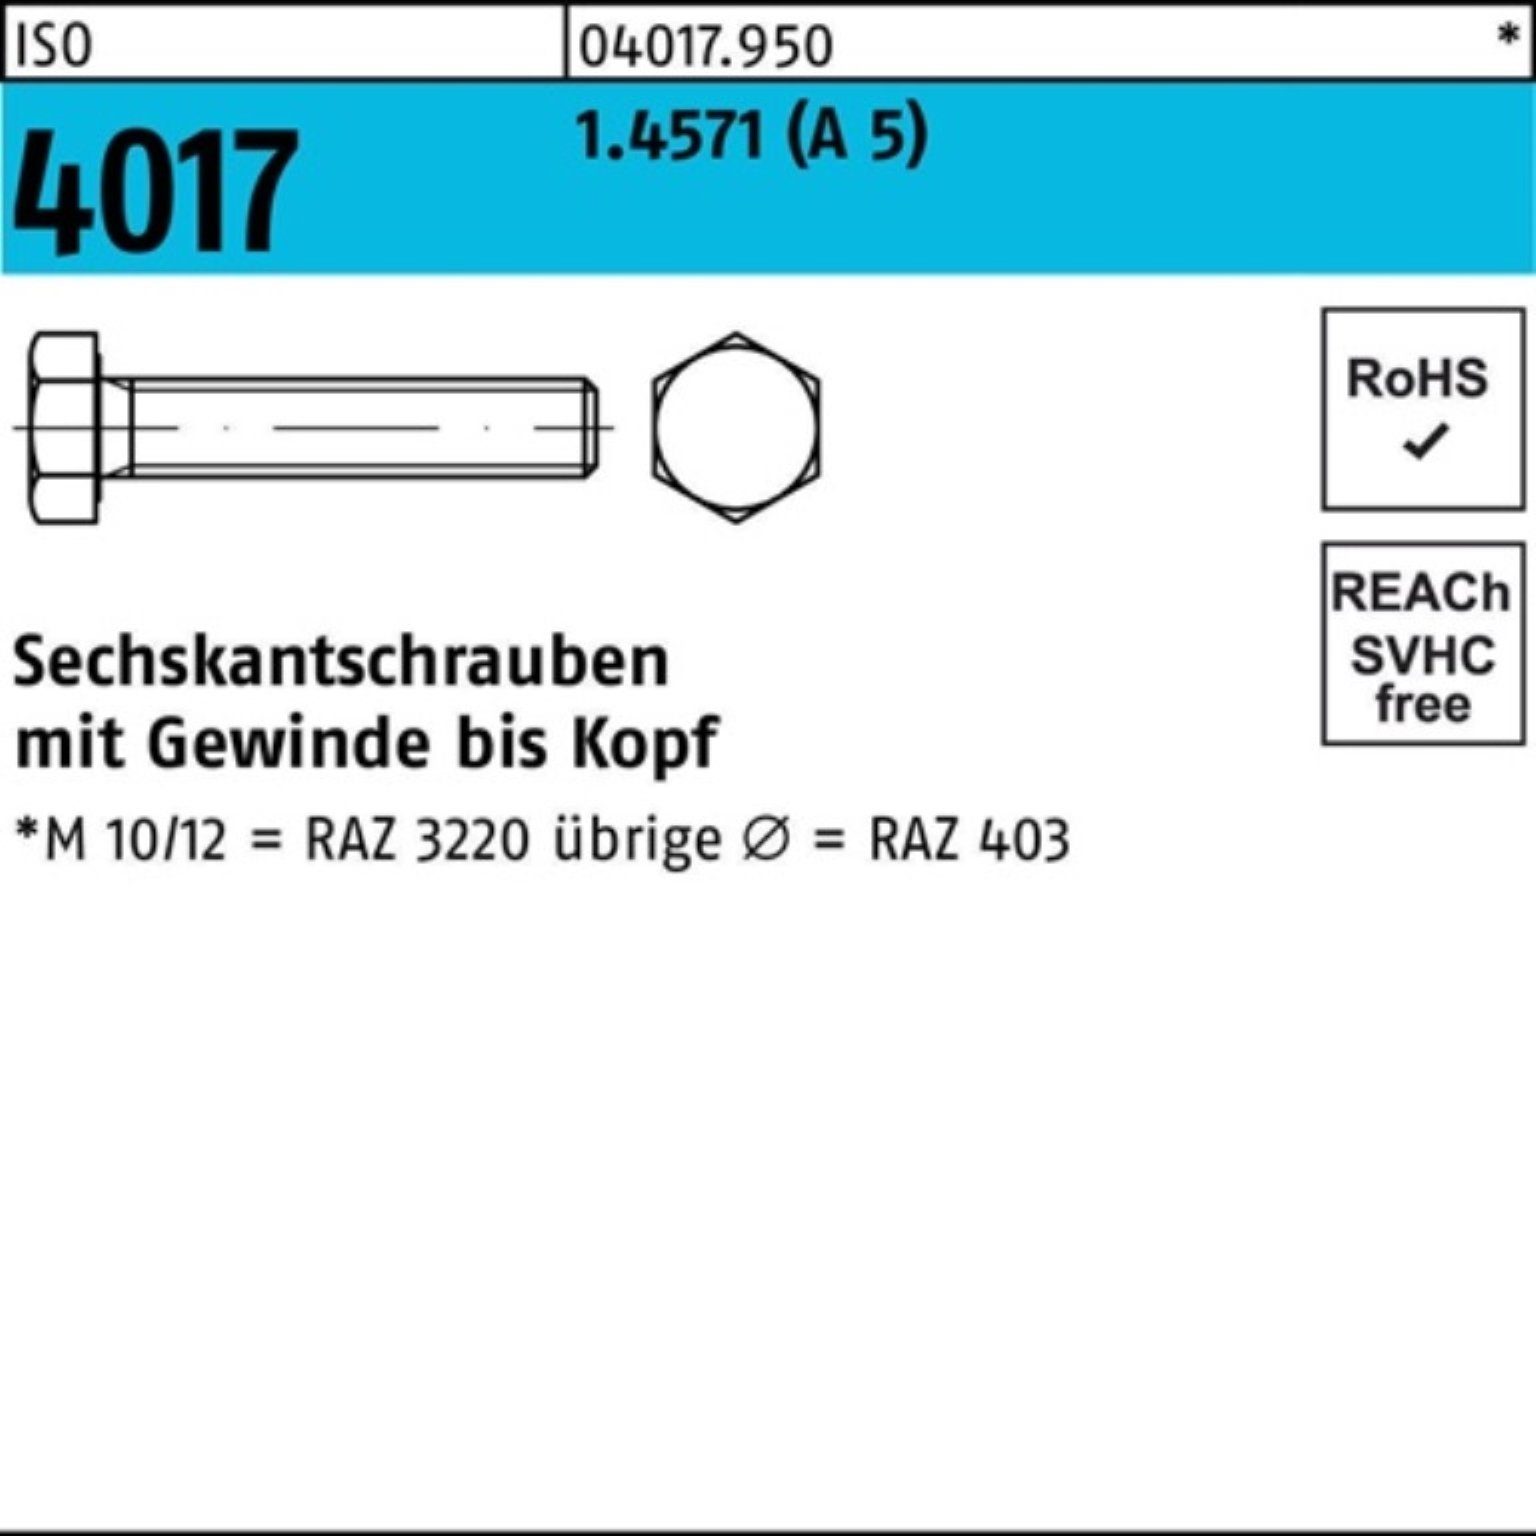 Sechskantschraube Pack Bufab VG 100er 1 4017 ISO 50 A 4017 5 Stück M16x ISO Sechskantschraube